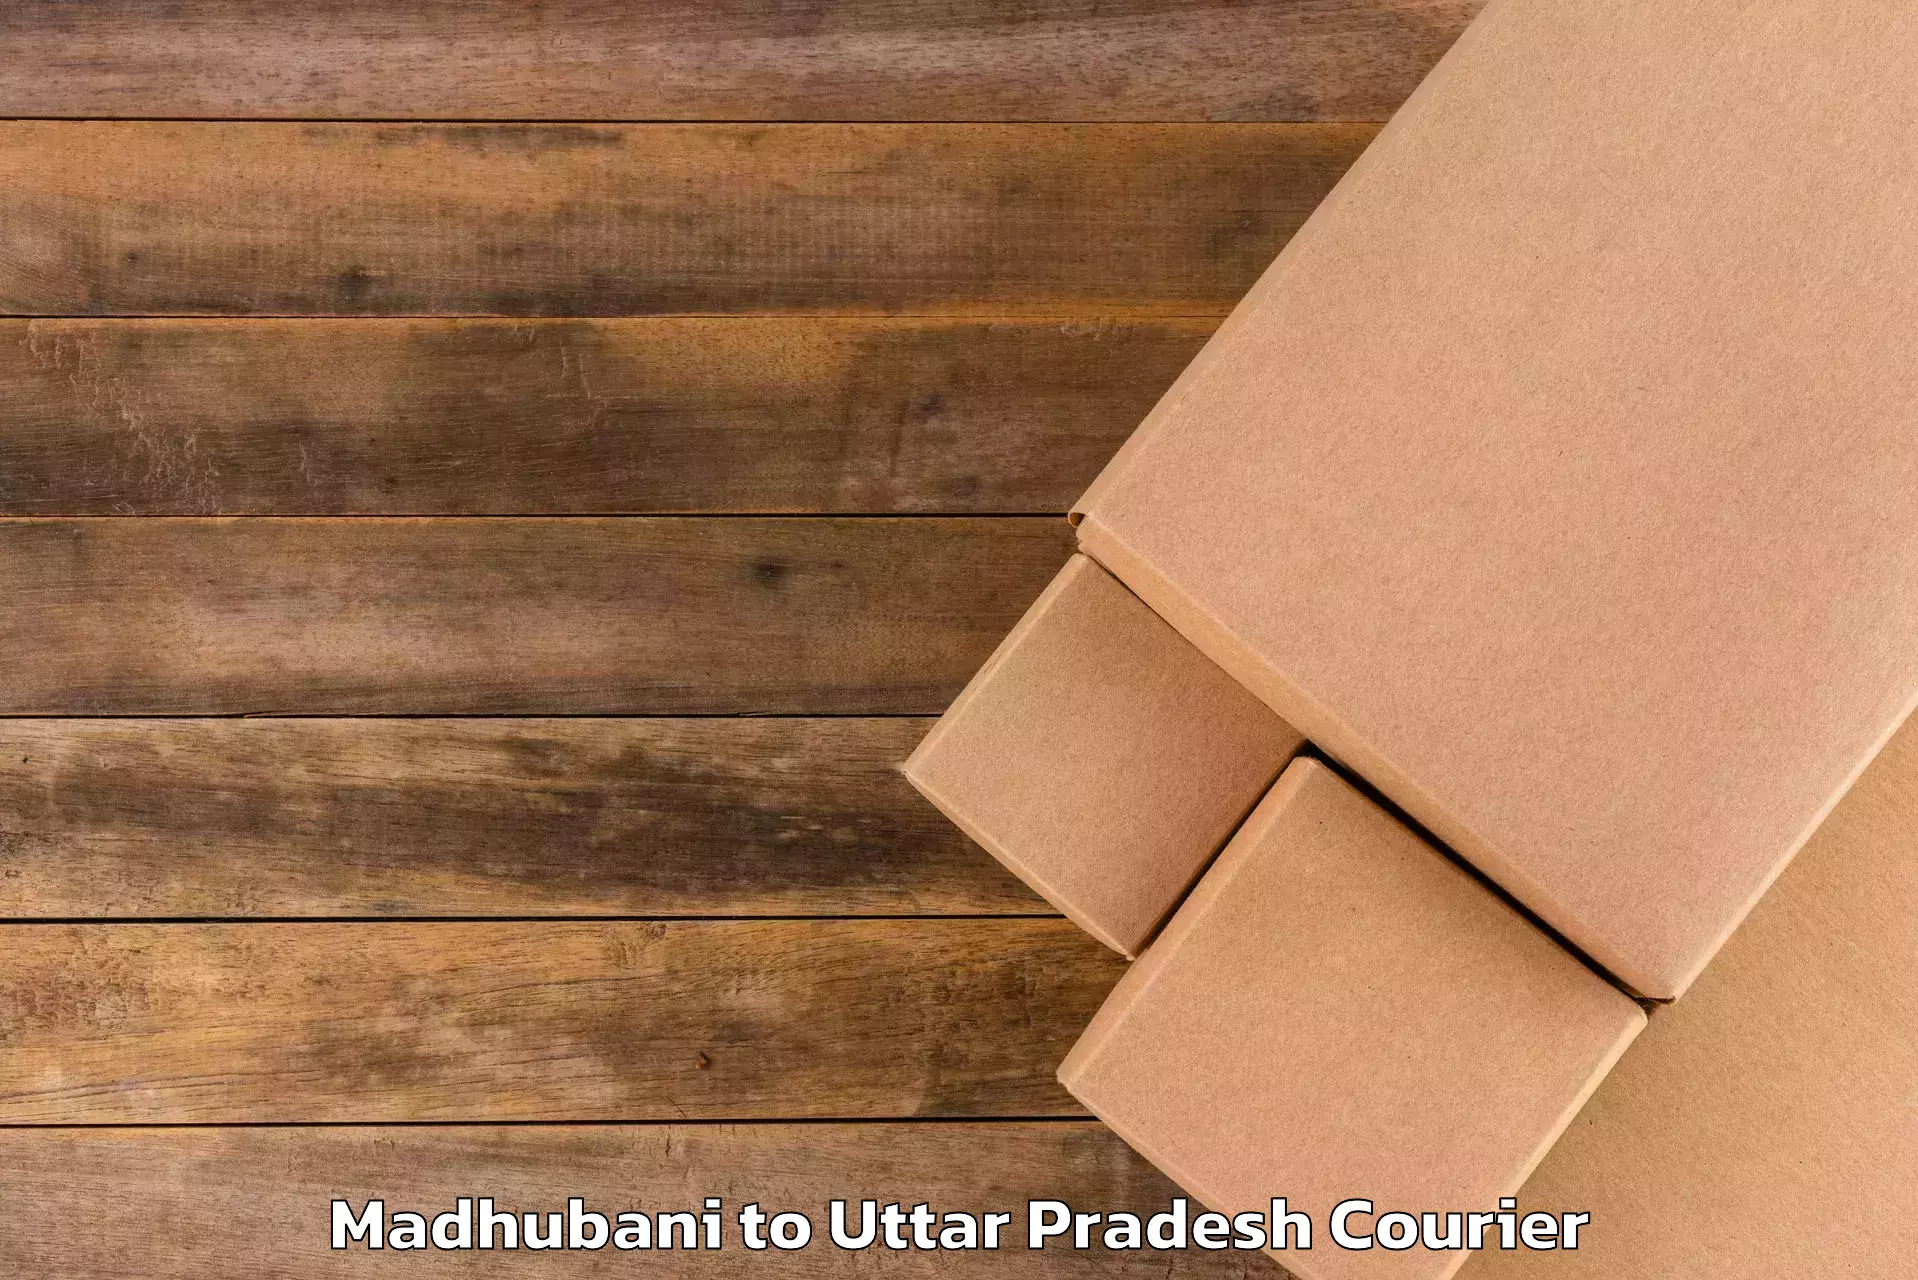 Nationwide luggage courier Madhubani to Aligarh